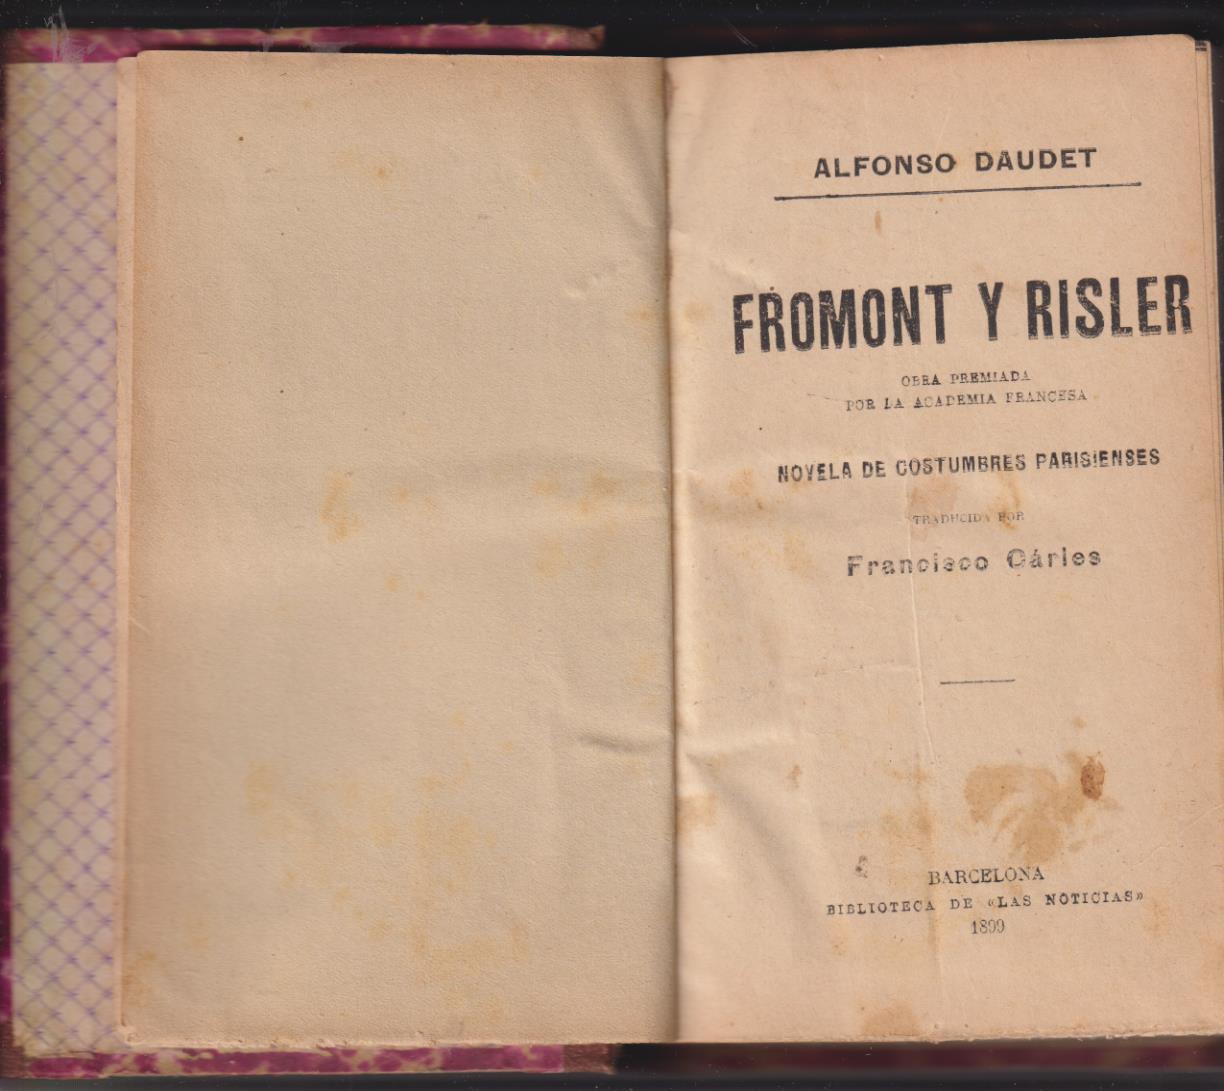 Alfonso Daudet. Fromont y Risler. Volumen I y II. Biblioteca de las Noticias. Barcelona 1899 y 1900